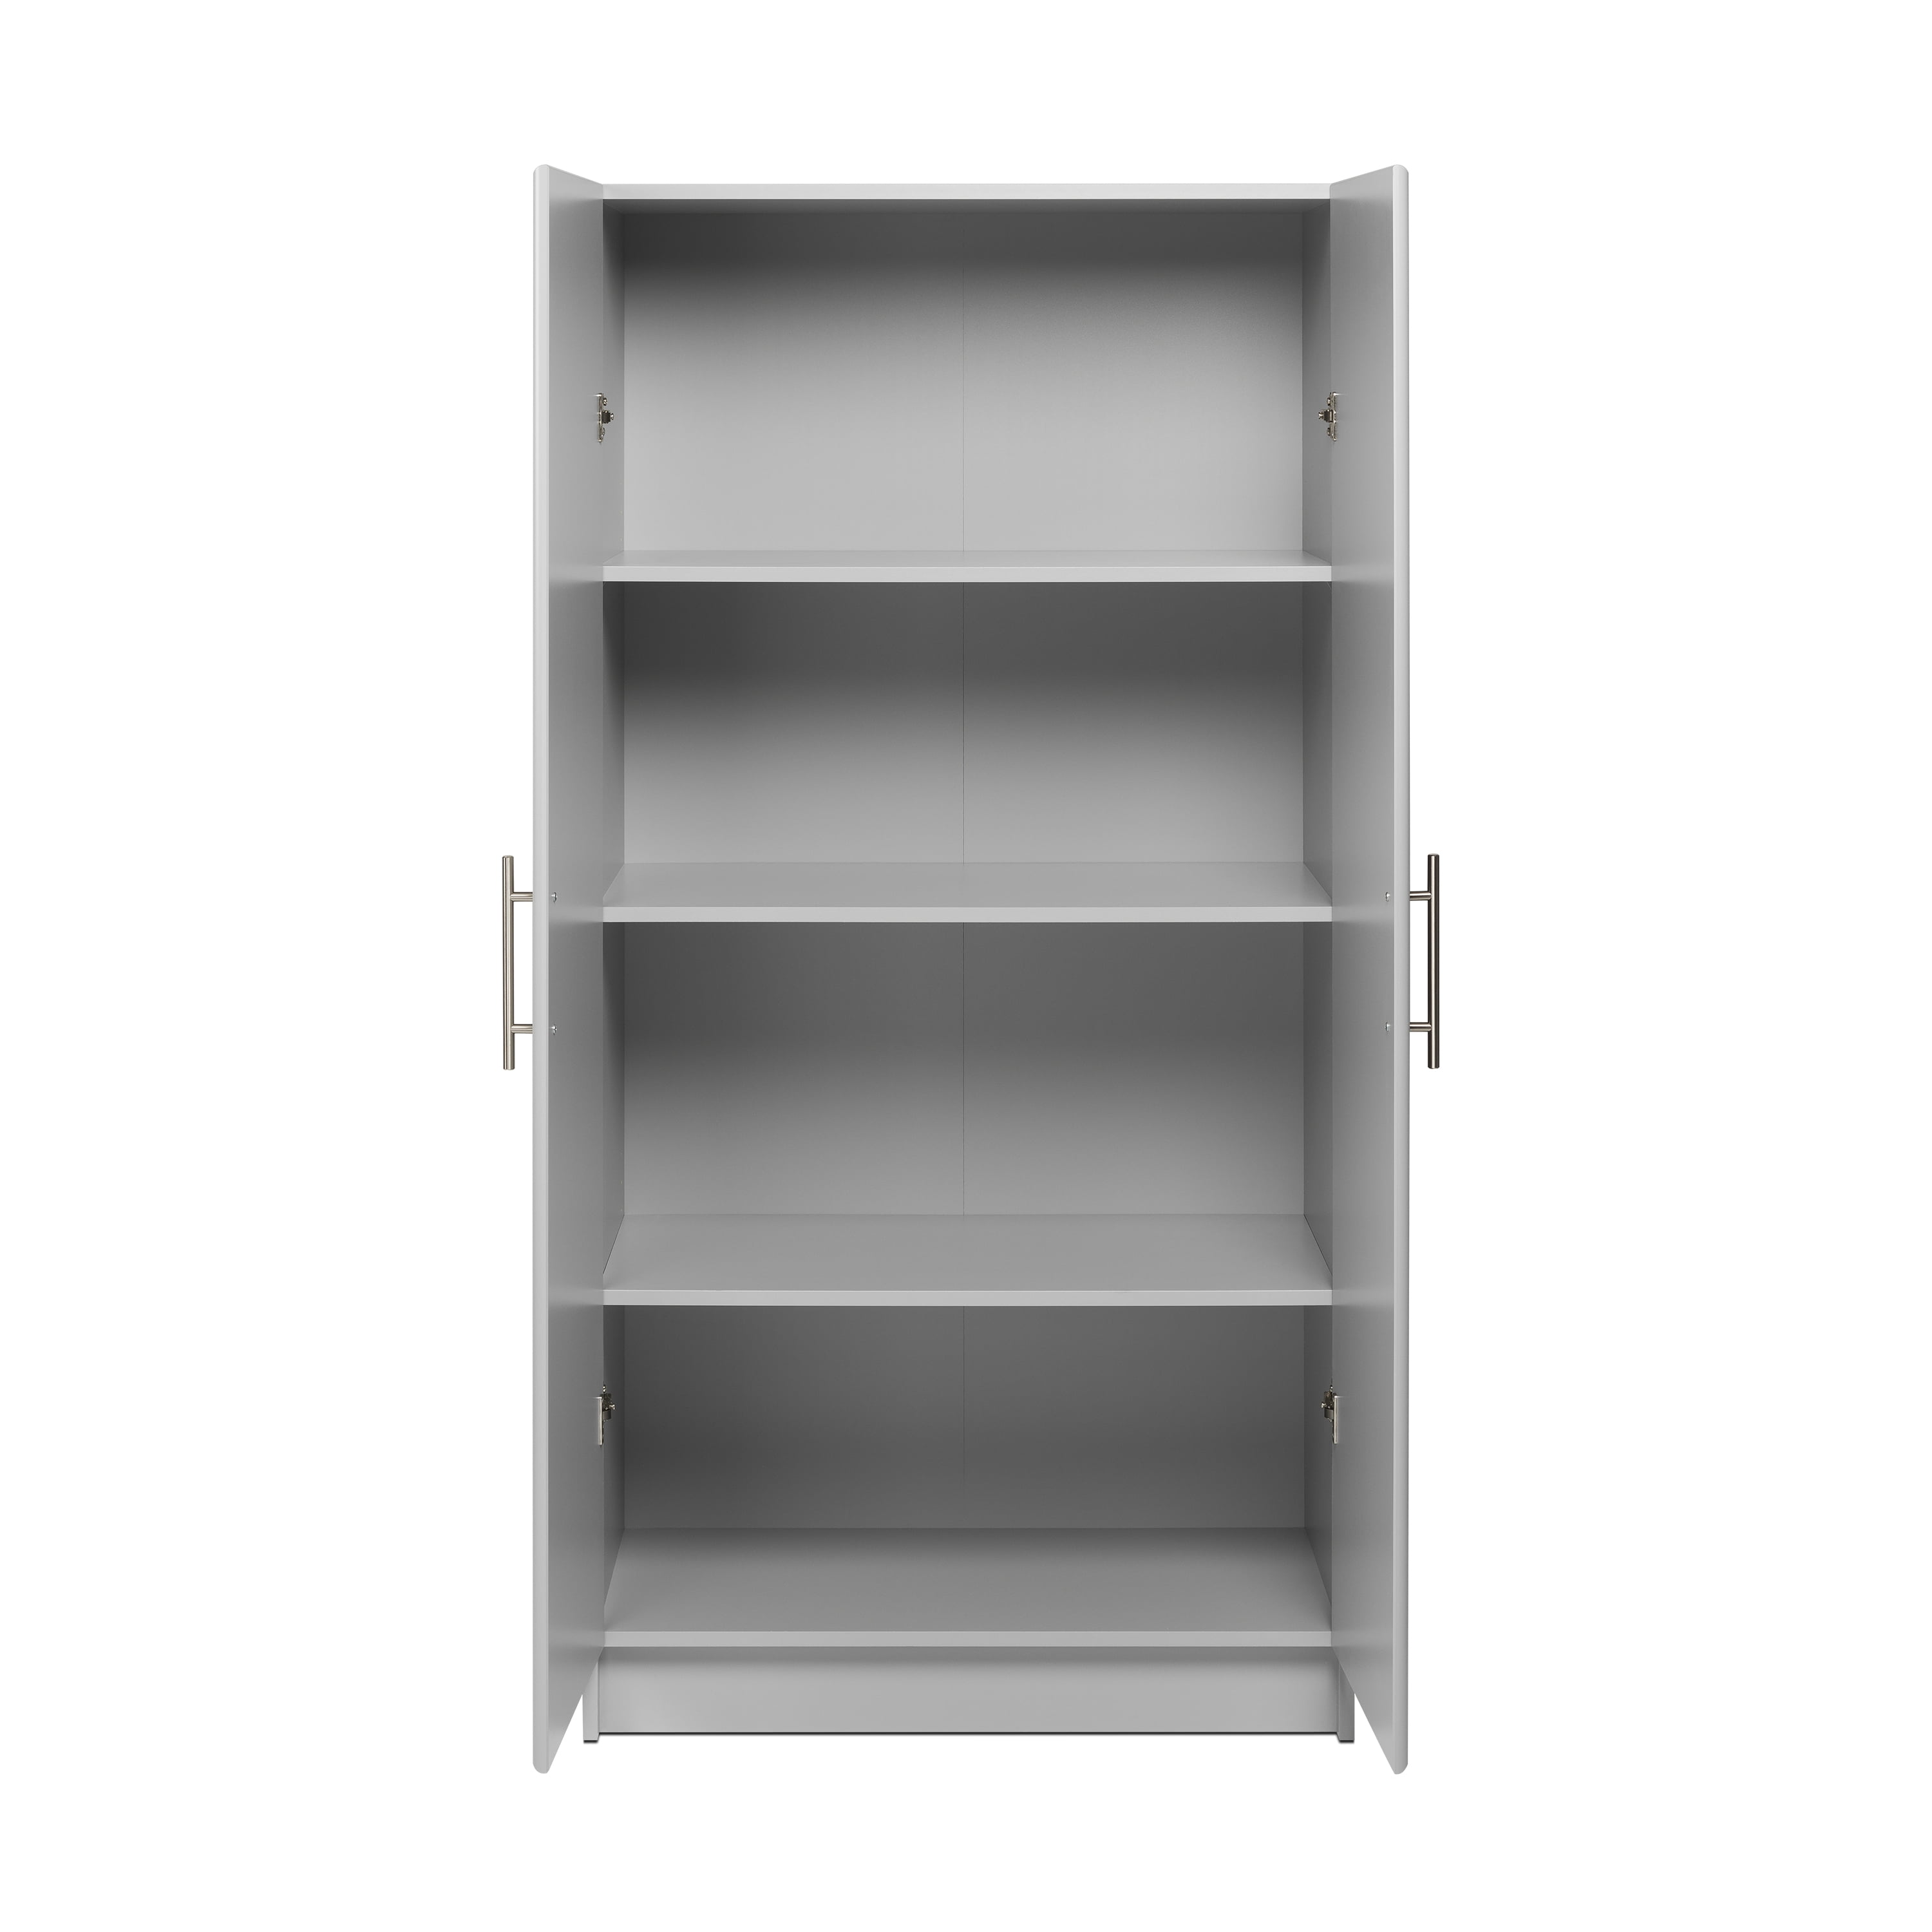 Prepac Elite Collection Tall 2 Door Cabinet (Black) BES-3264